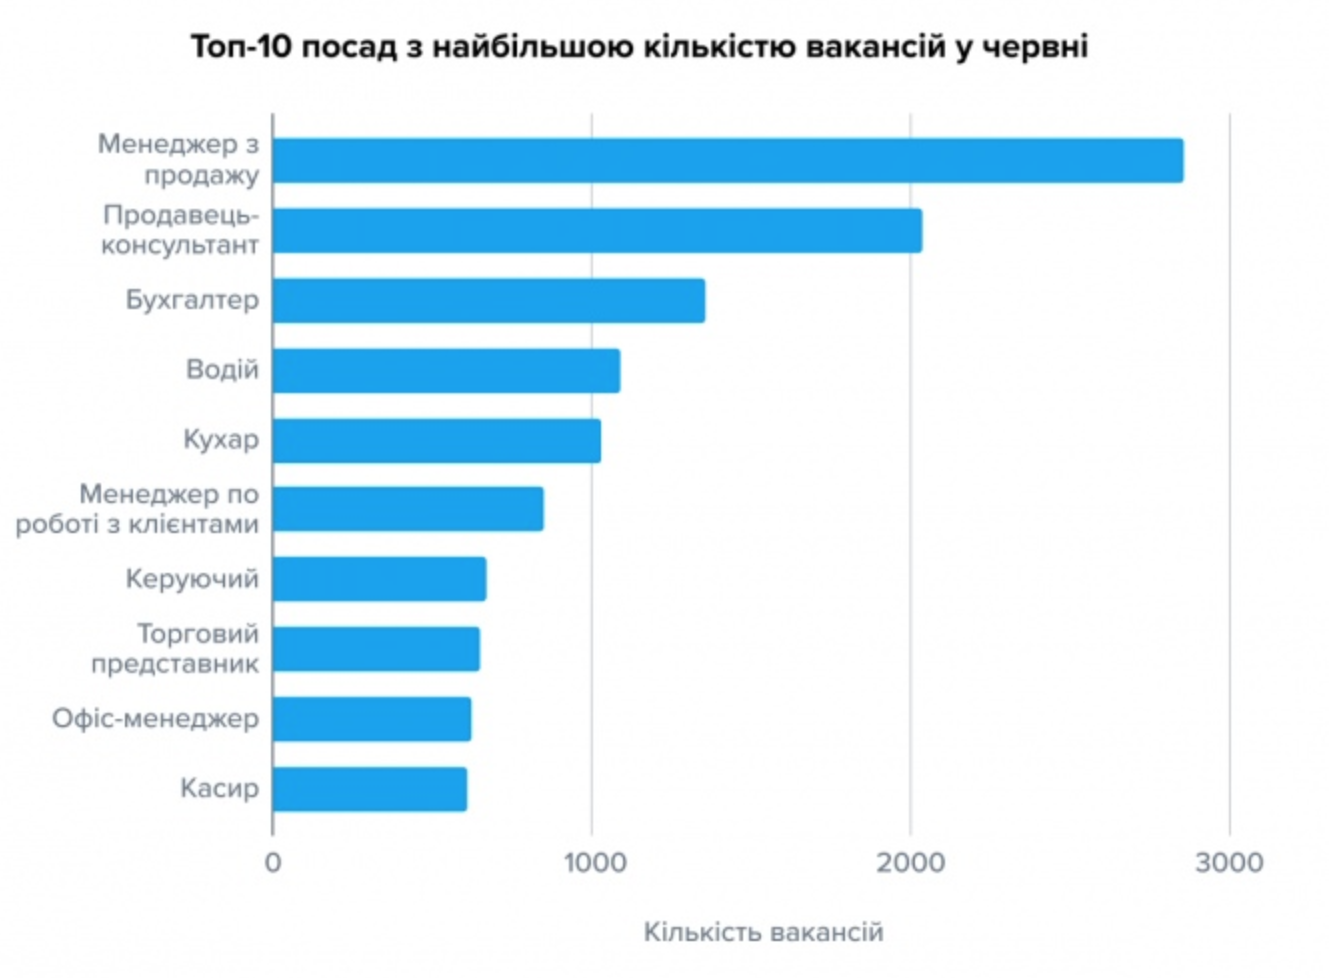 10 stanowisk z największą liczbą wakatów w czerwcu (źródło: epravda.com.ua)